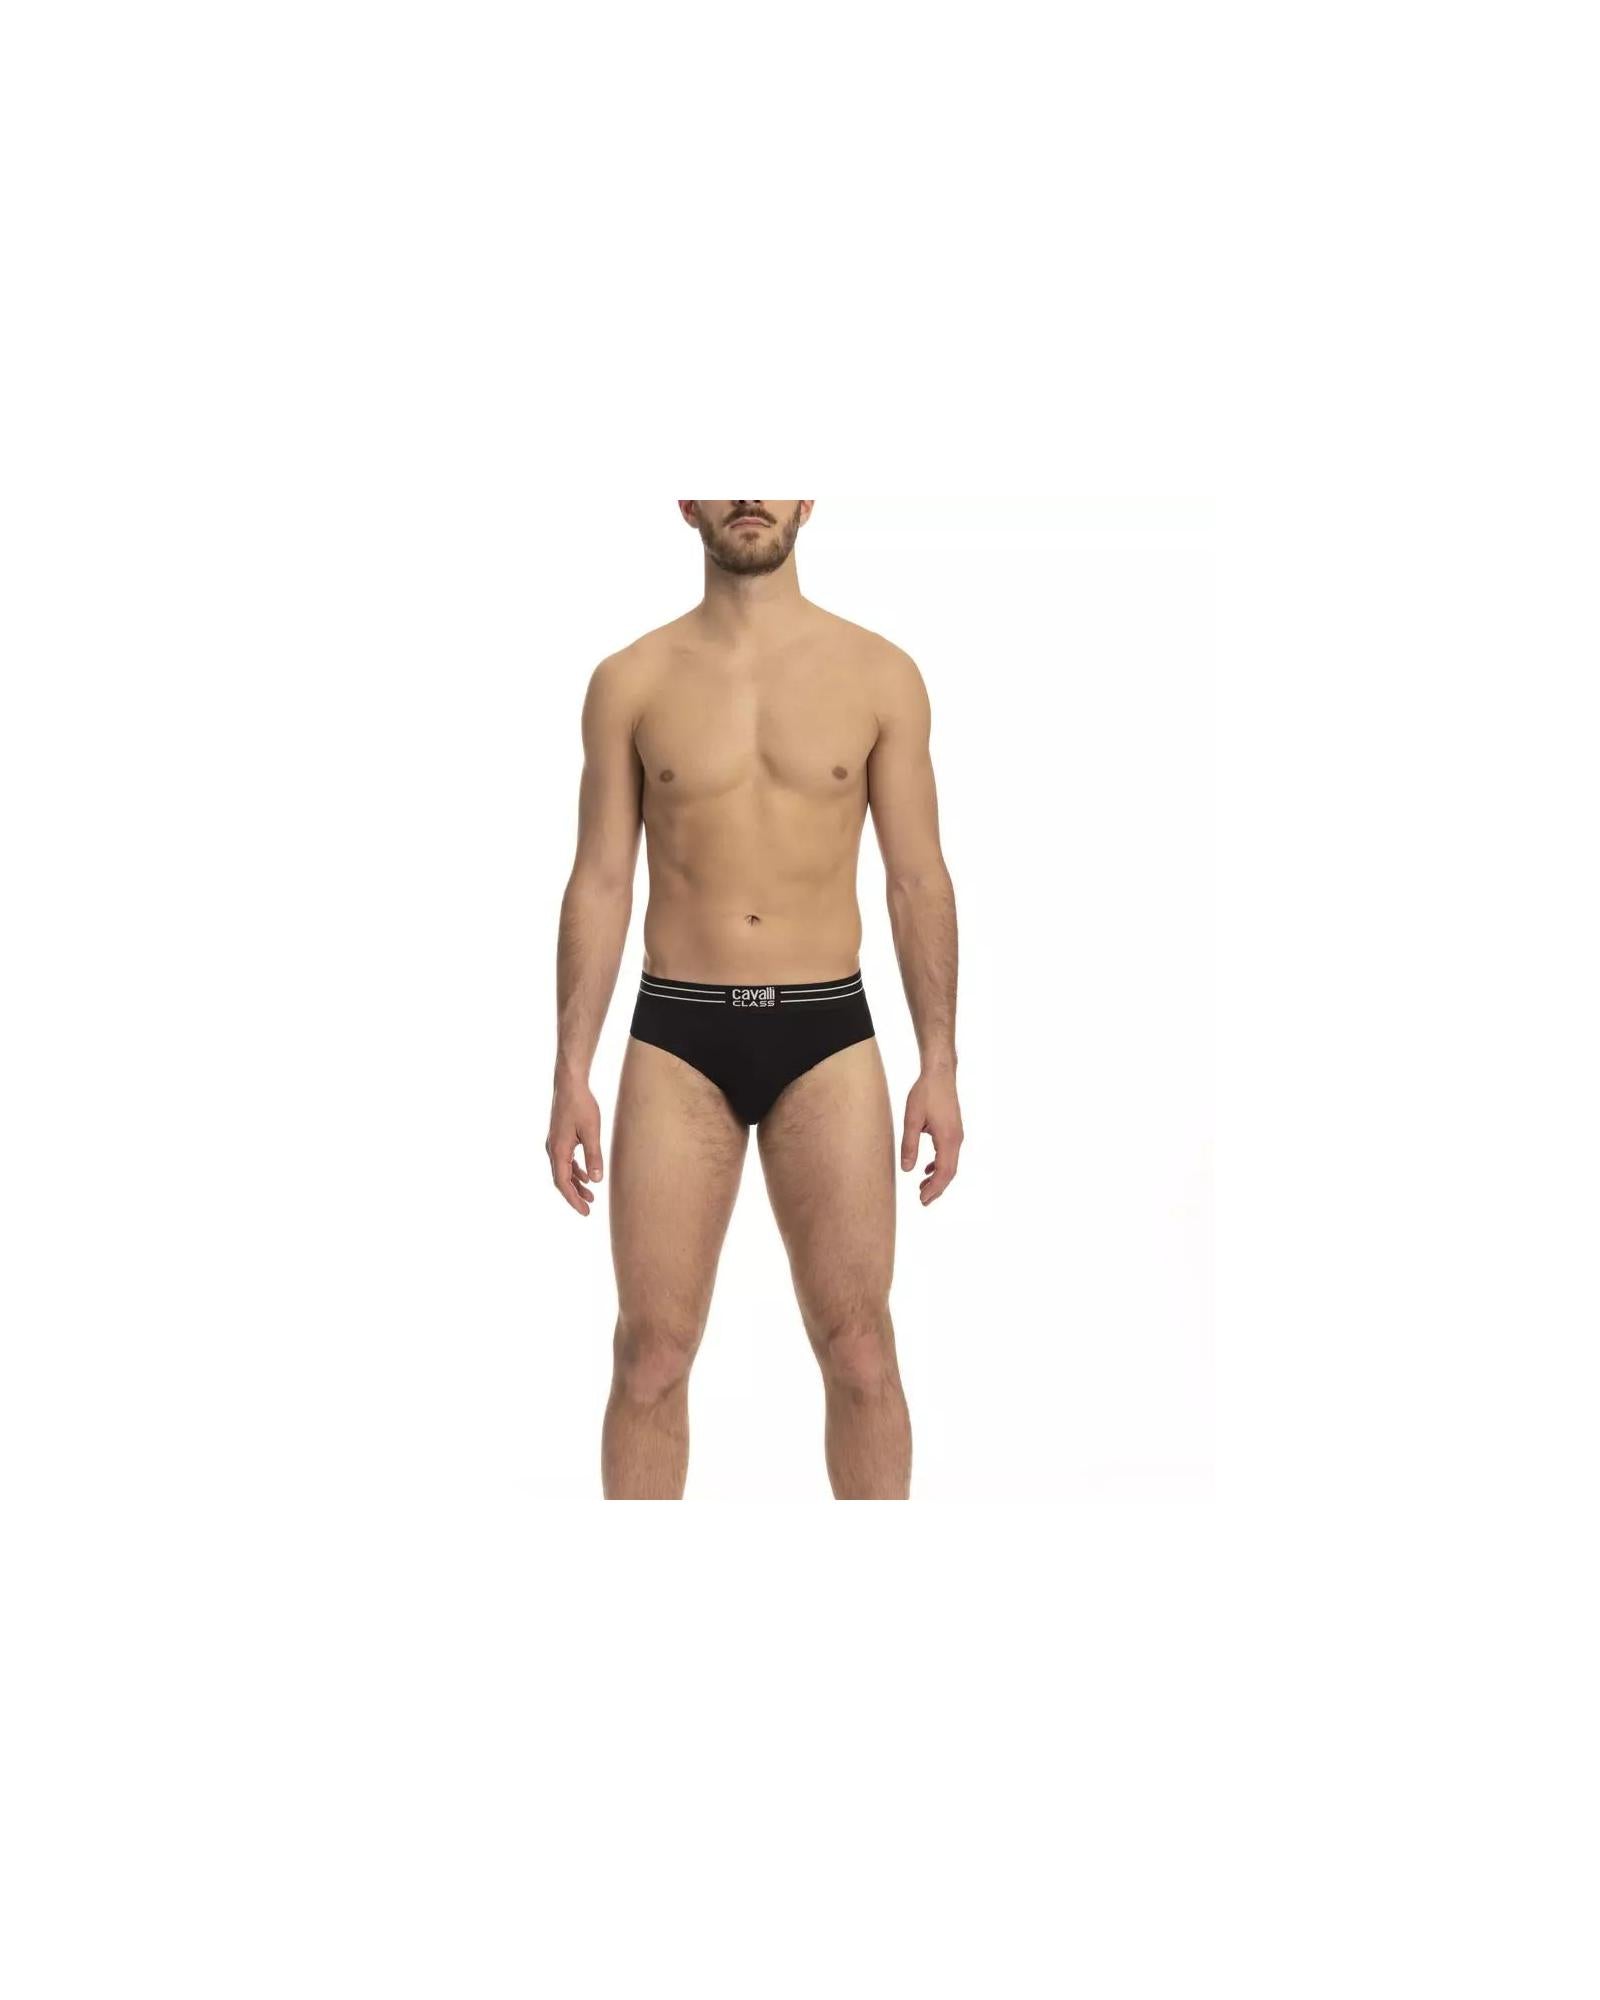 Men's Black Cotton Underwear - XL